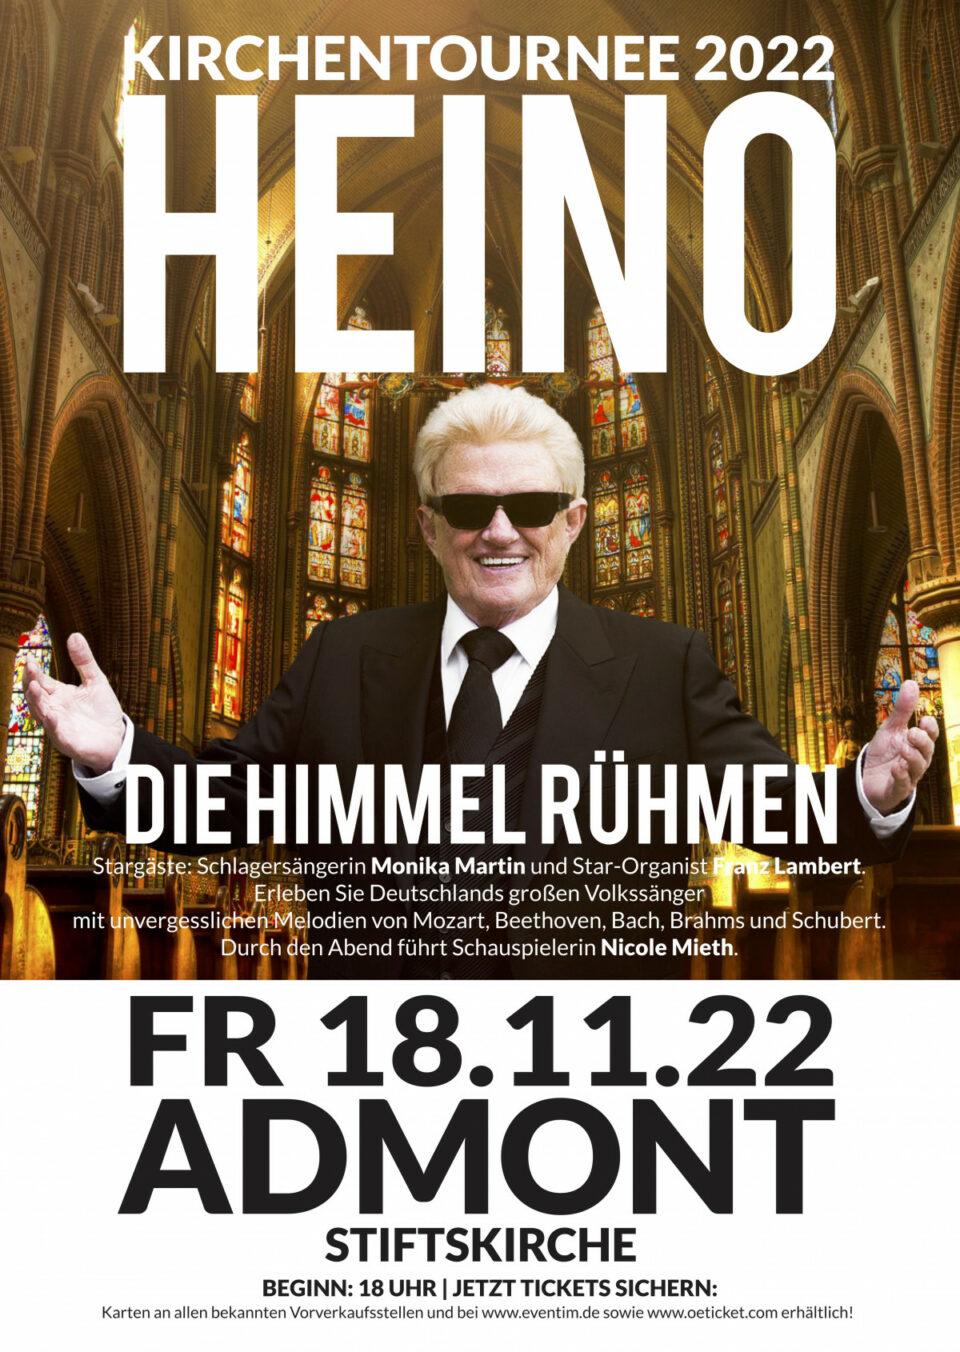 Heino geht auf Kirchentournee